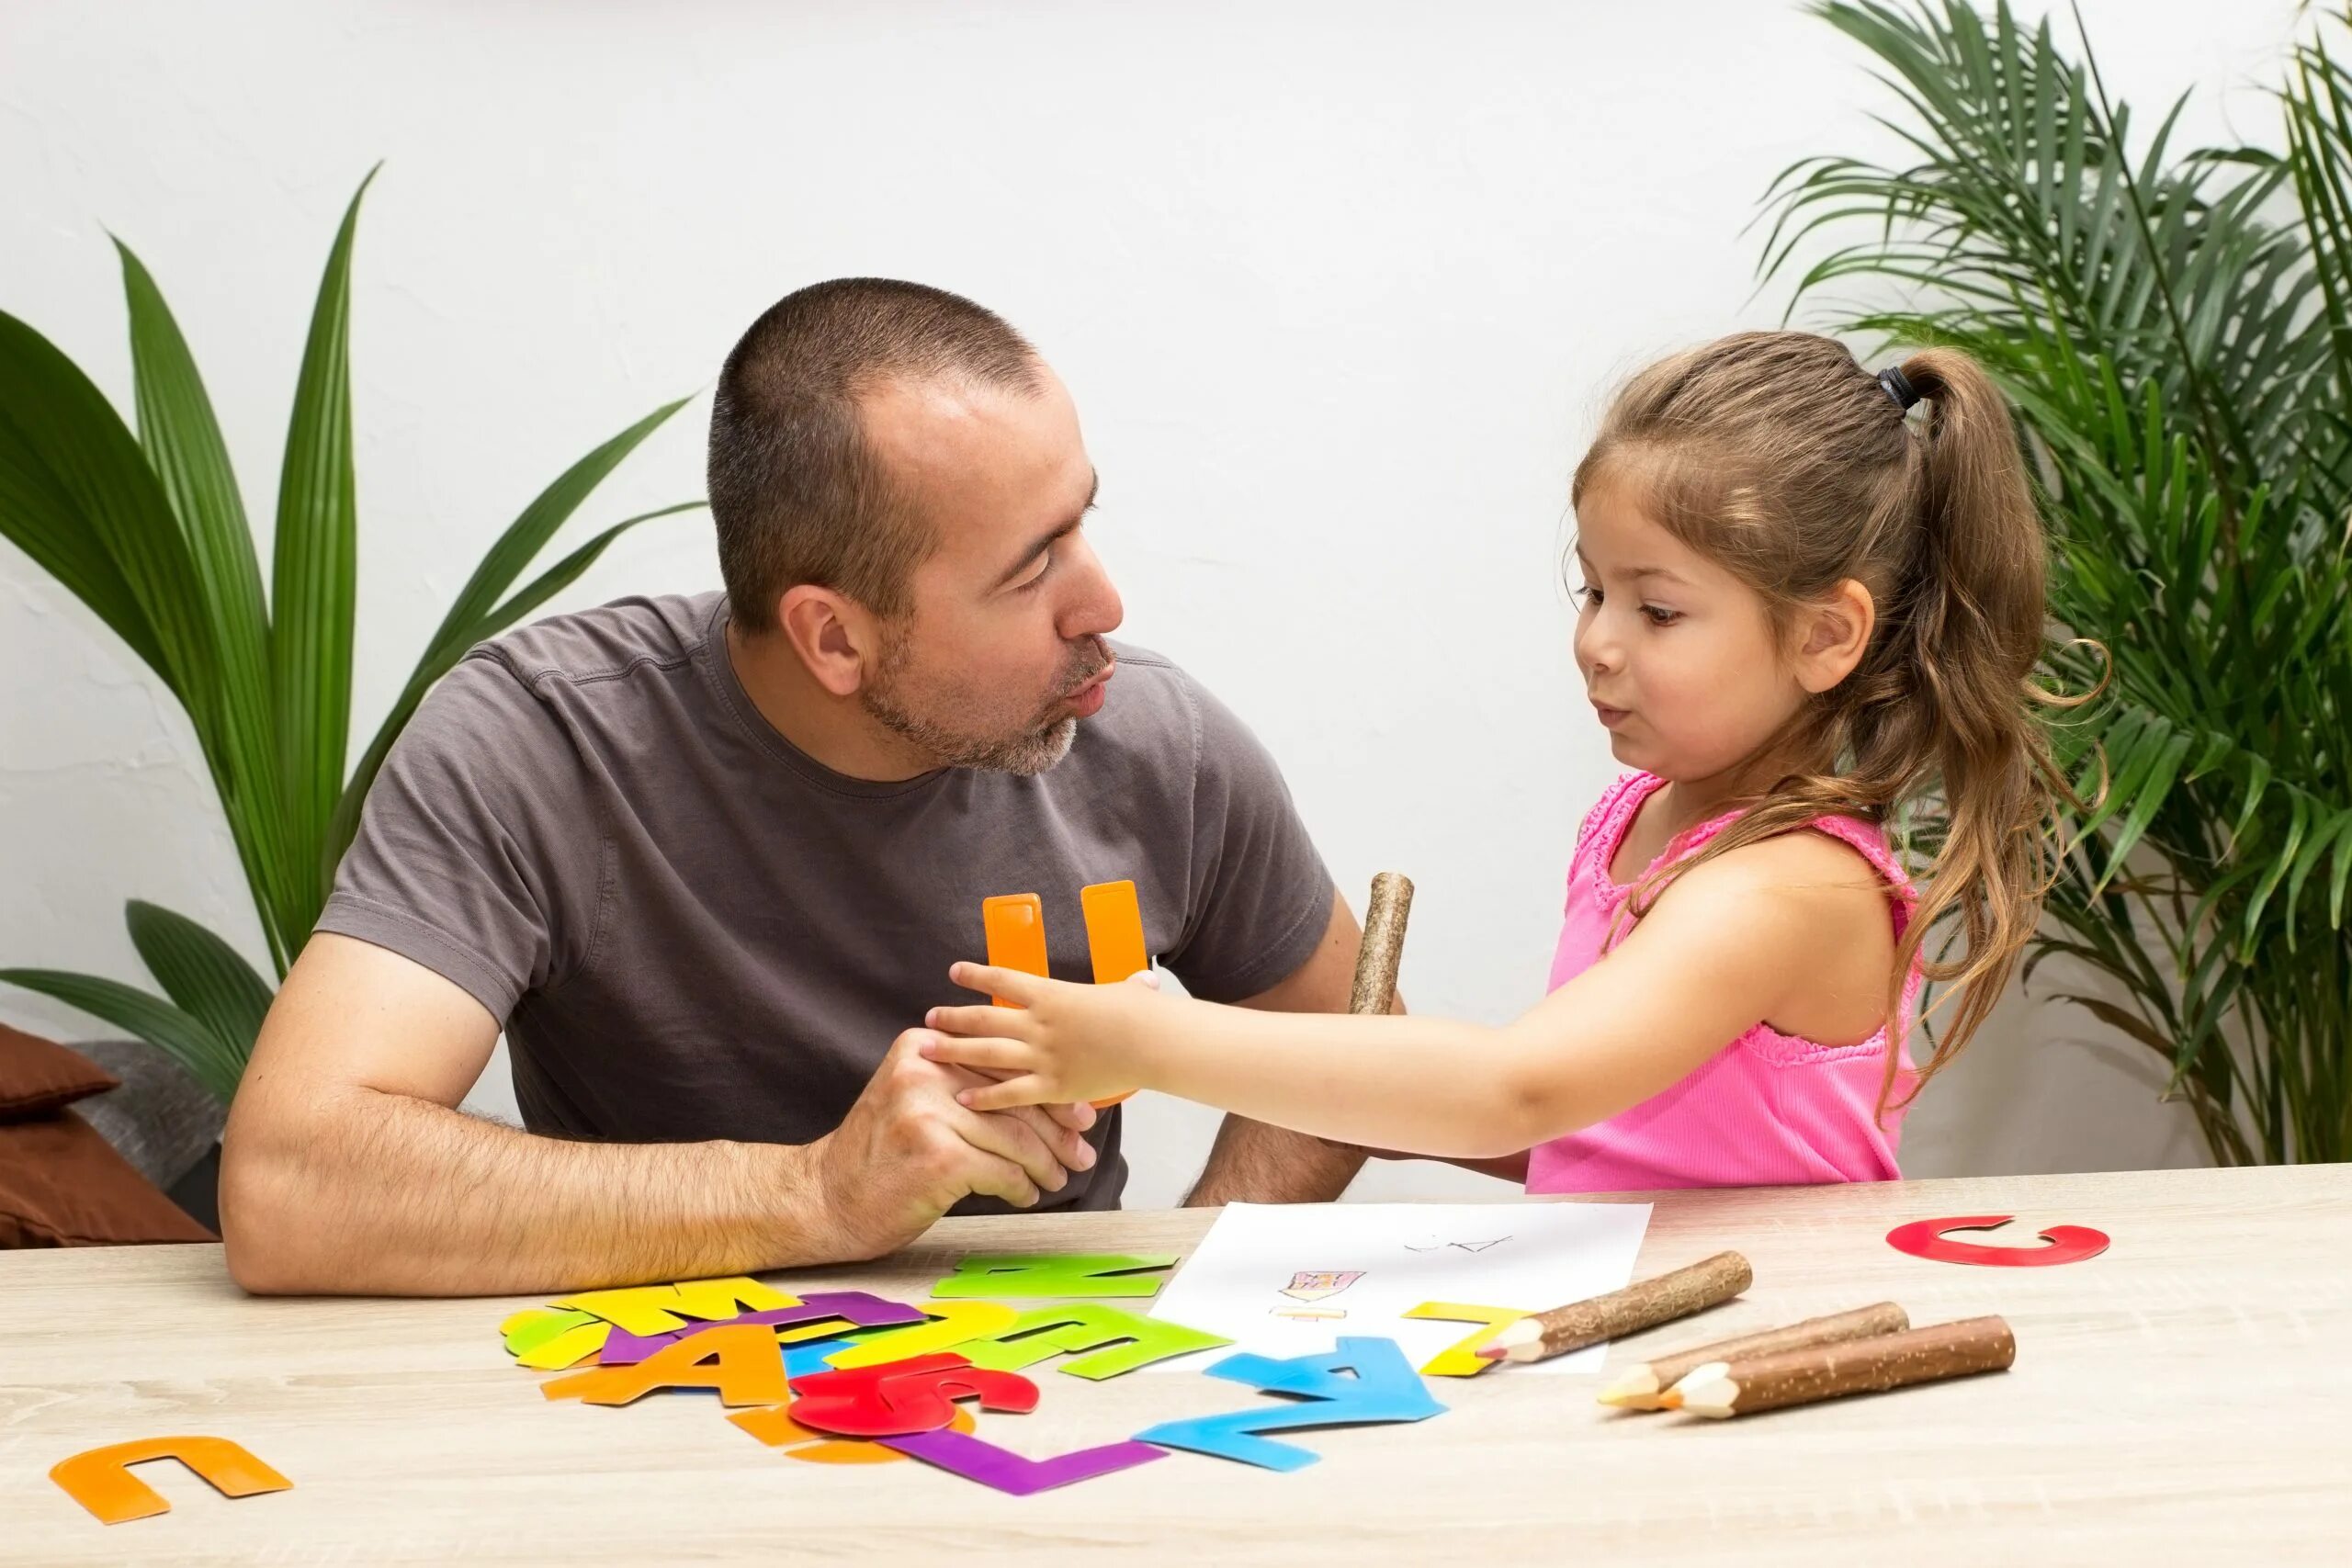 Dad teach. Родители играют с детьми. Папа учит ребенка. Родители с детьми делают поделки. Домашние занятия србенокм.